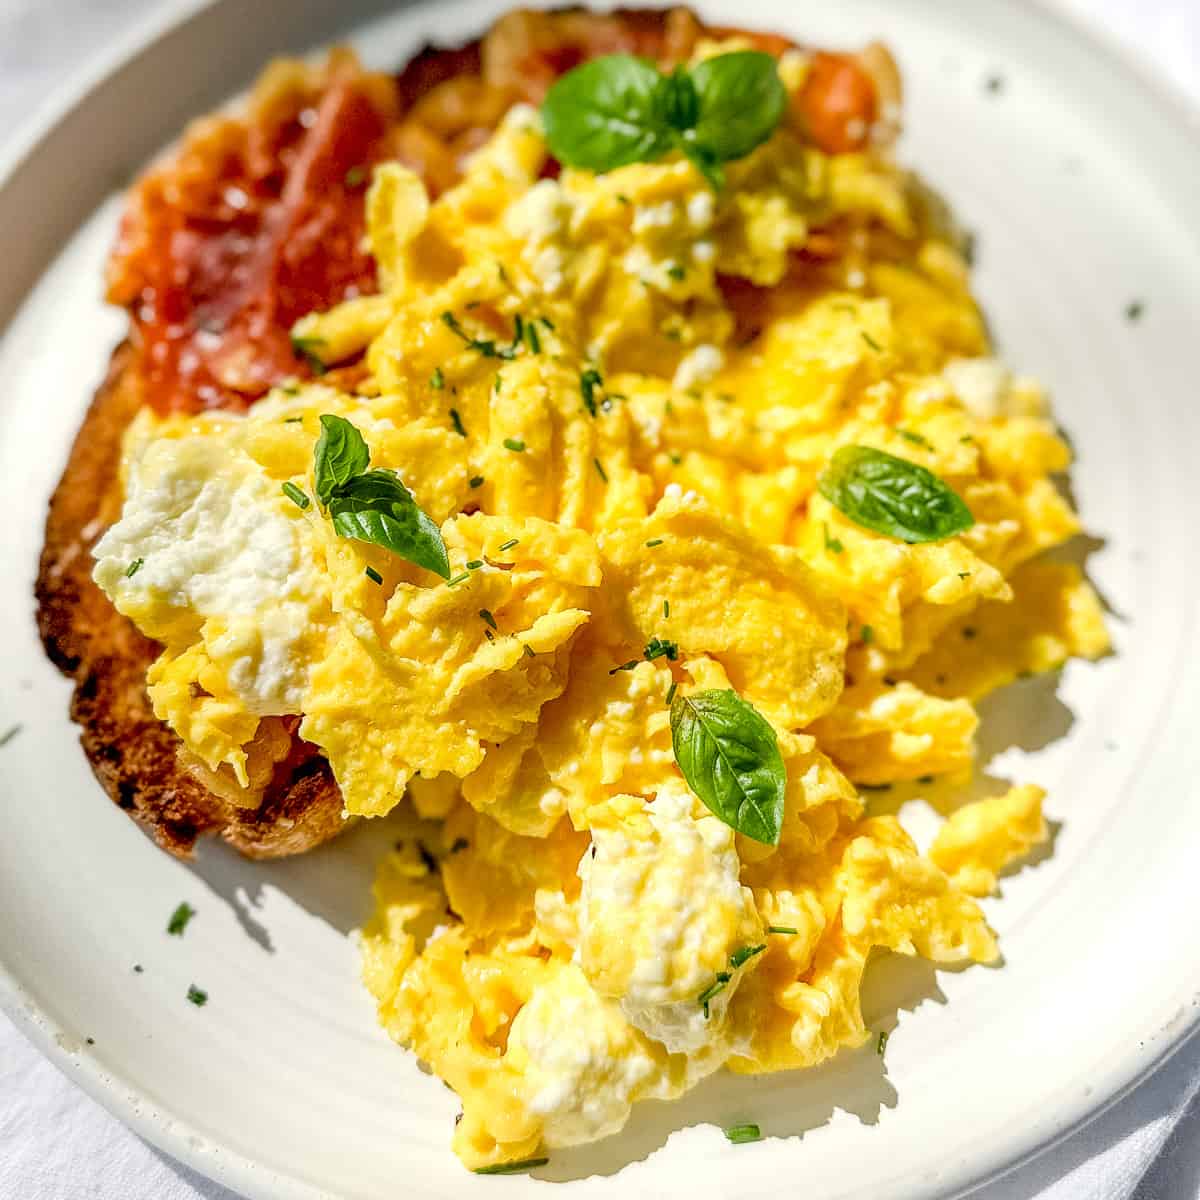 https://butfirstwebrunch.com/wp-content/uploads/2023/08/creamy-ricotta-scrambled-eggs-5.jpg